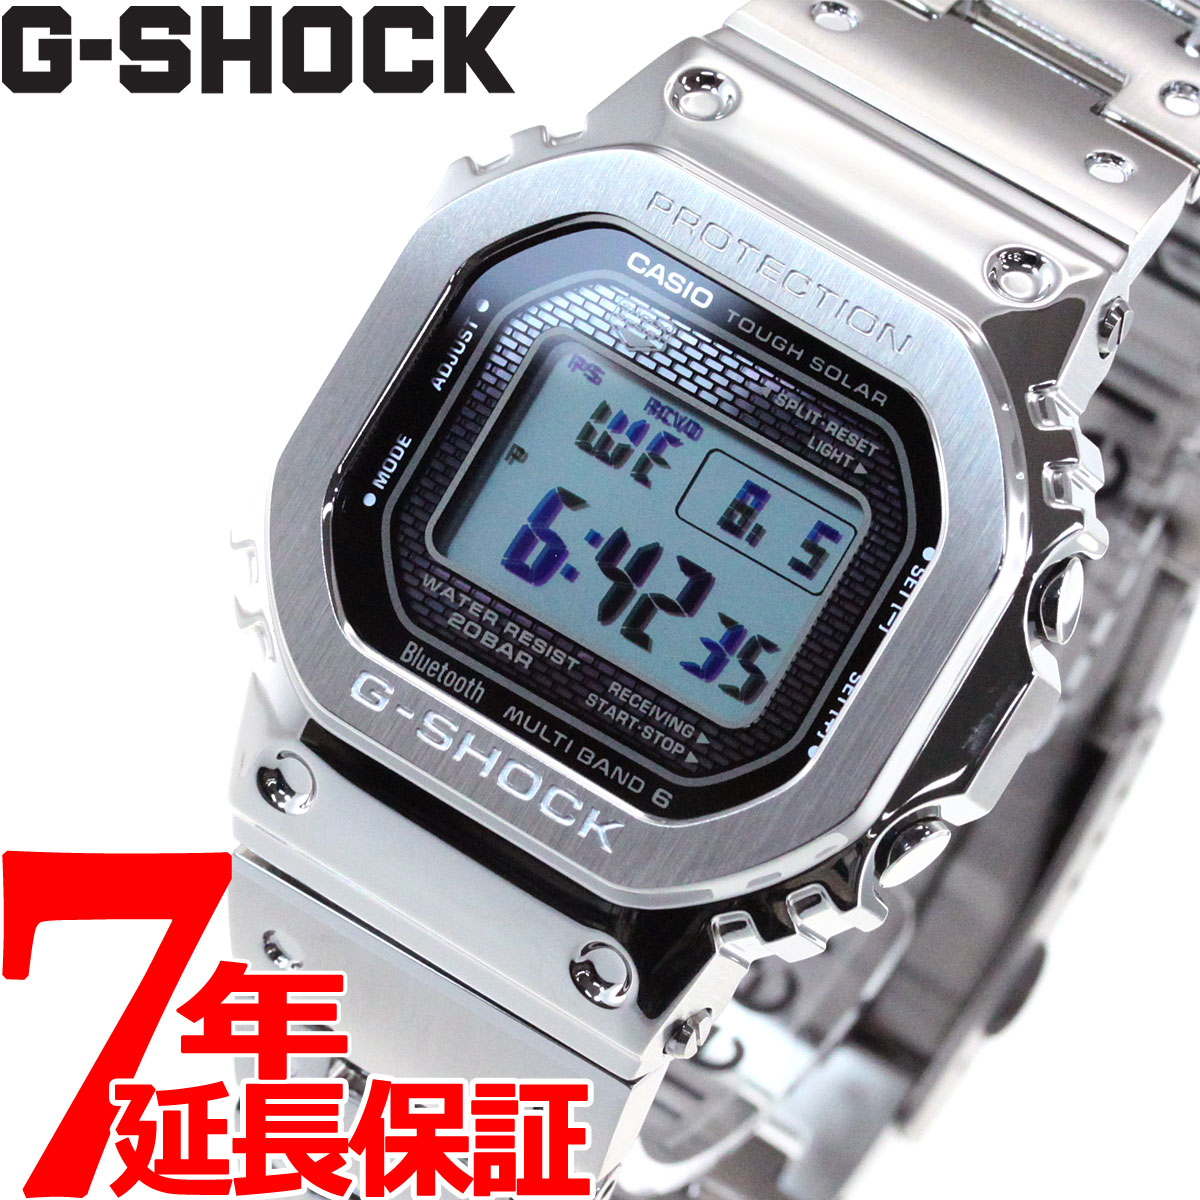 【楽天】カシオ Gショック CASIO G-SHOCK デジタル ソーラー 電波時計 Bluetooth ブルートゥース 対応 腕時計 メンズ